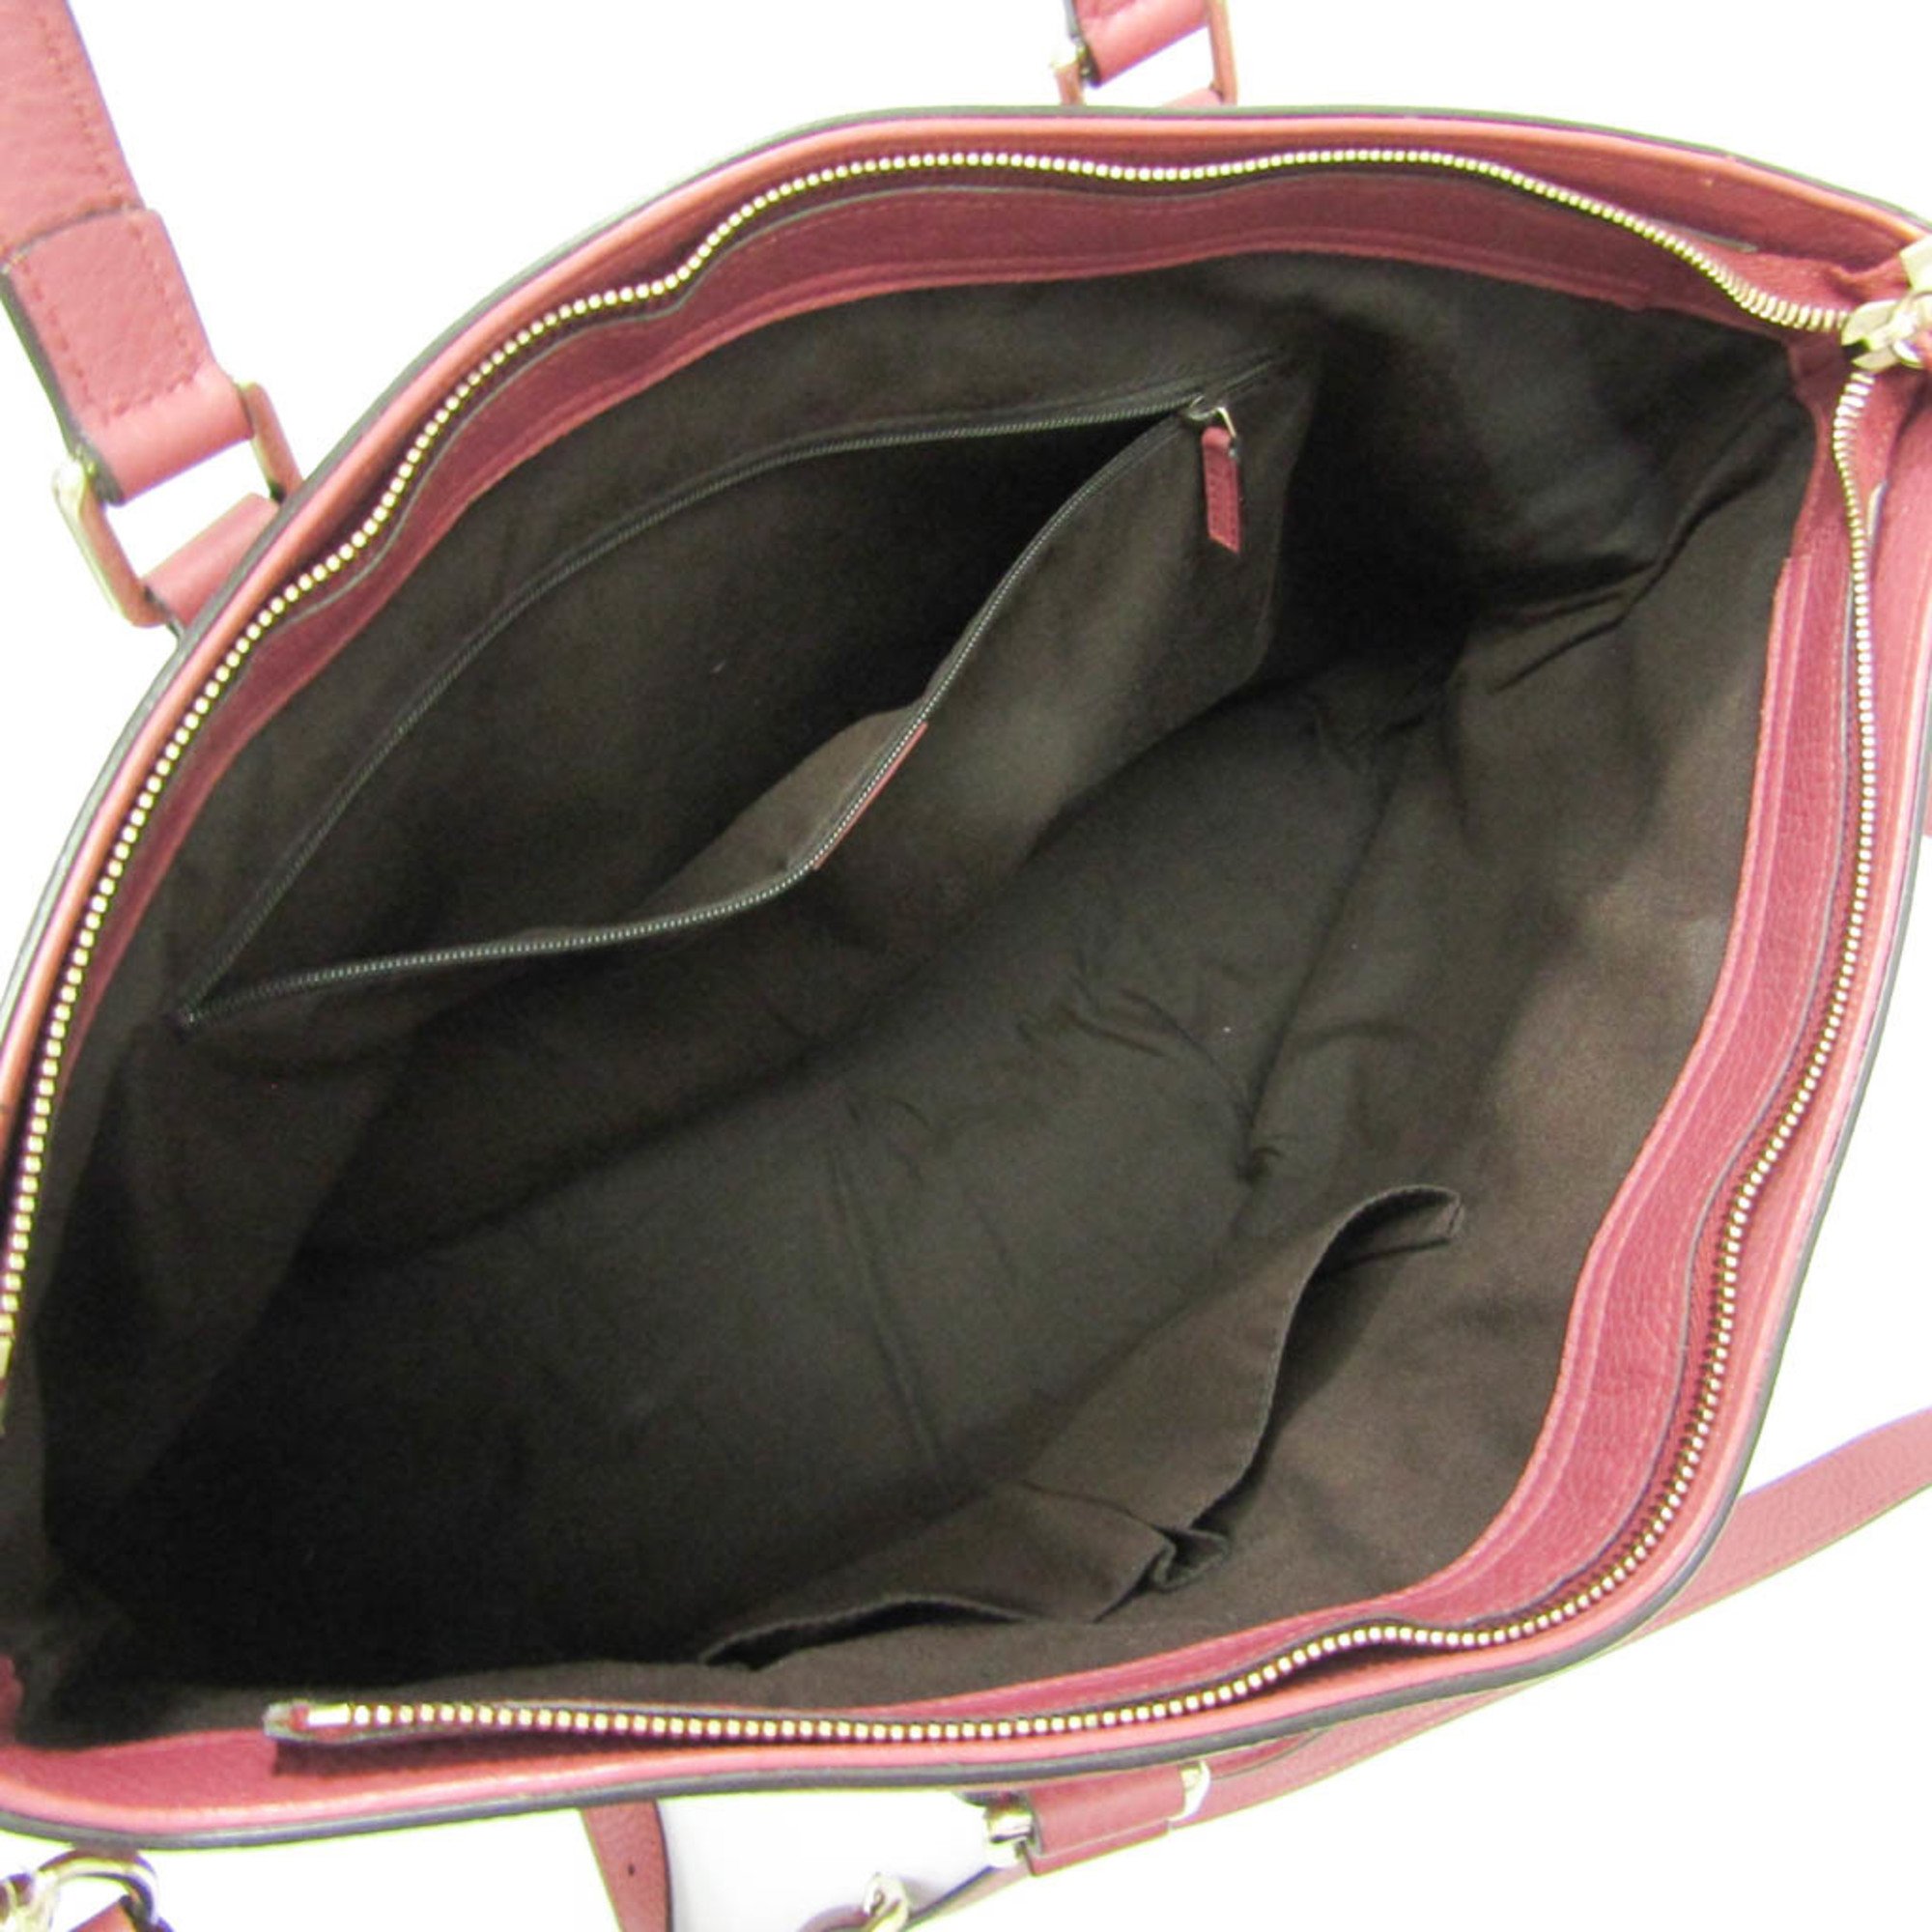 Gucci Bamboo Fringe 365345 Women,Men Leather,Bamboo Handbag,Shoulder Bag Pink Red